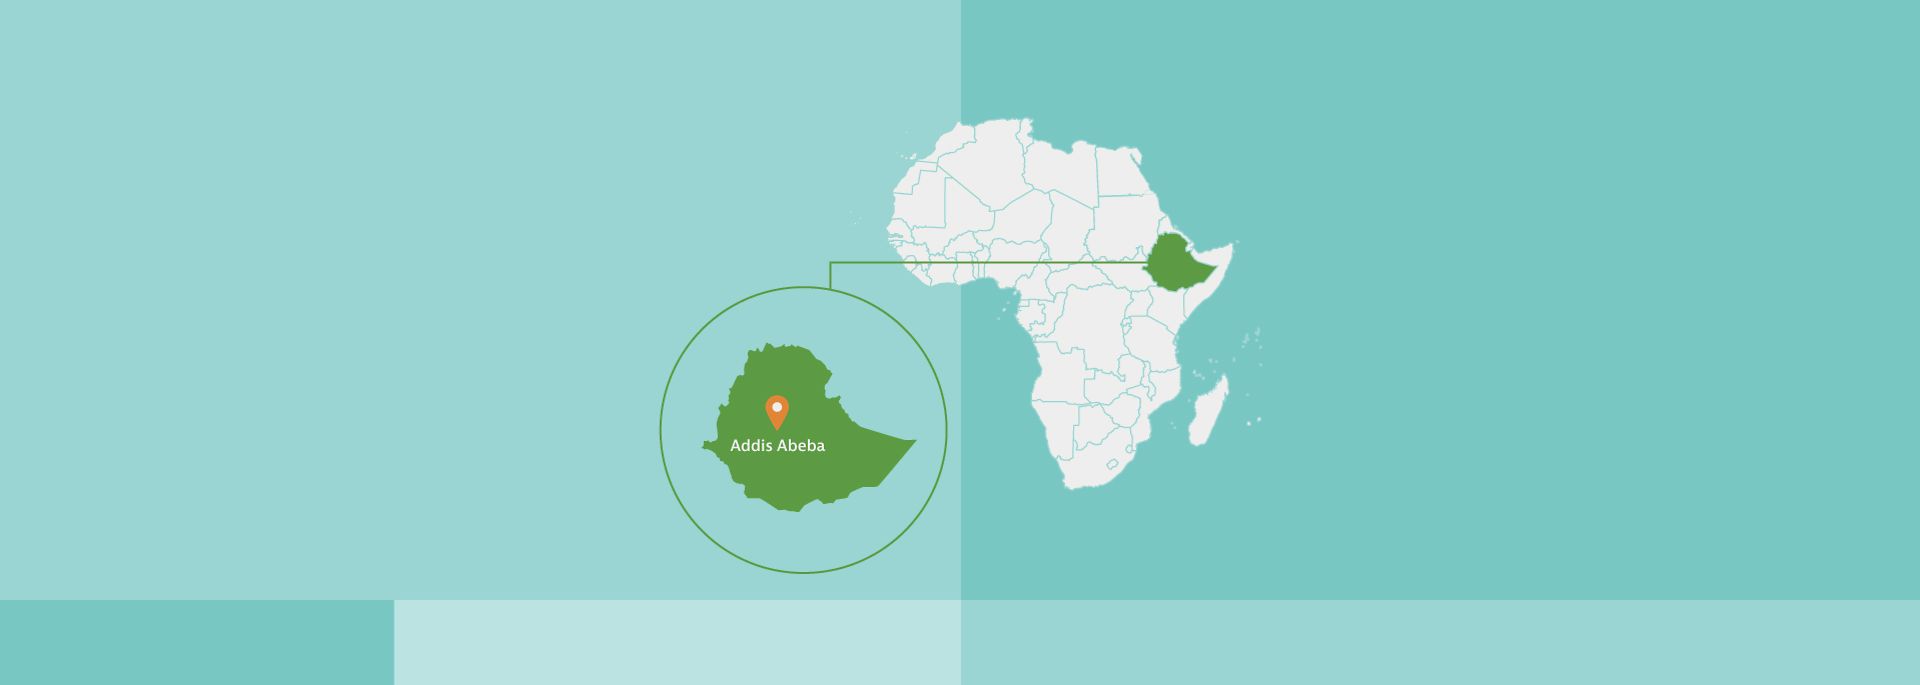 Afrikakarte, Äthiopien